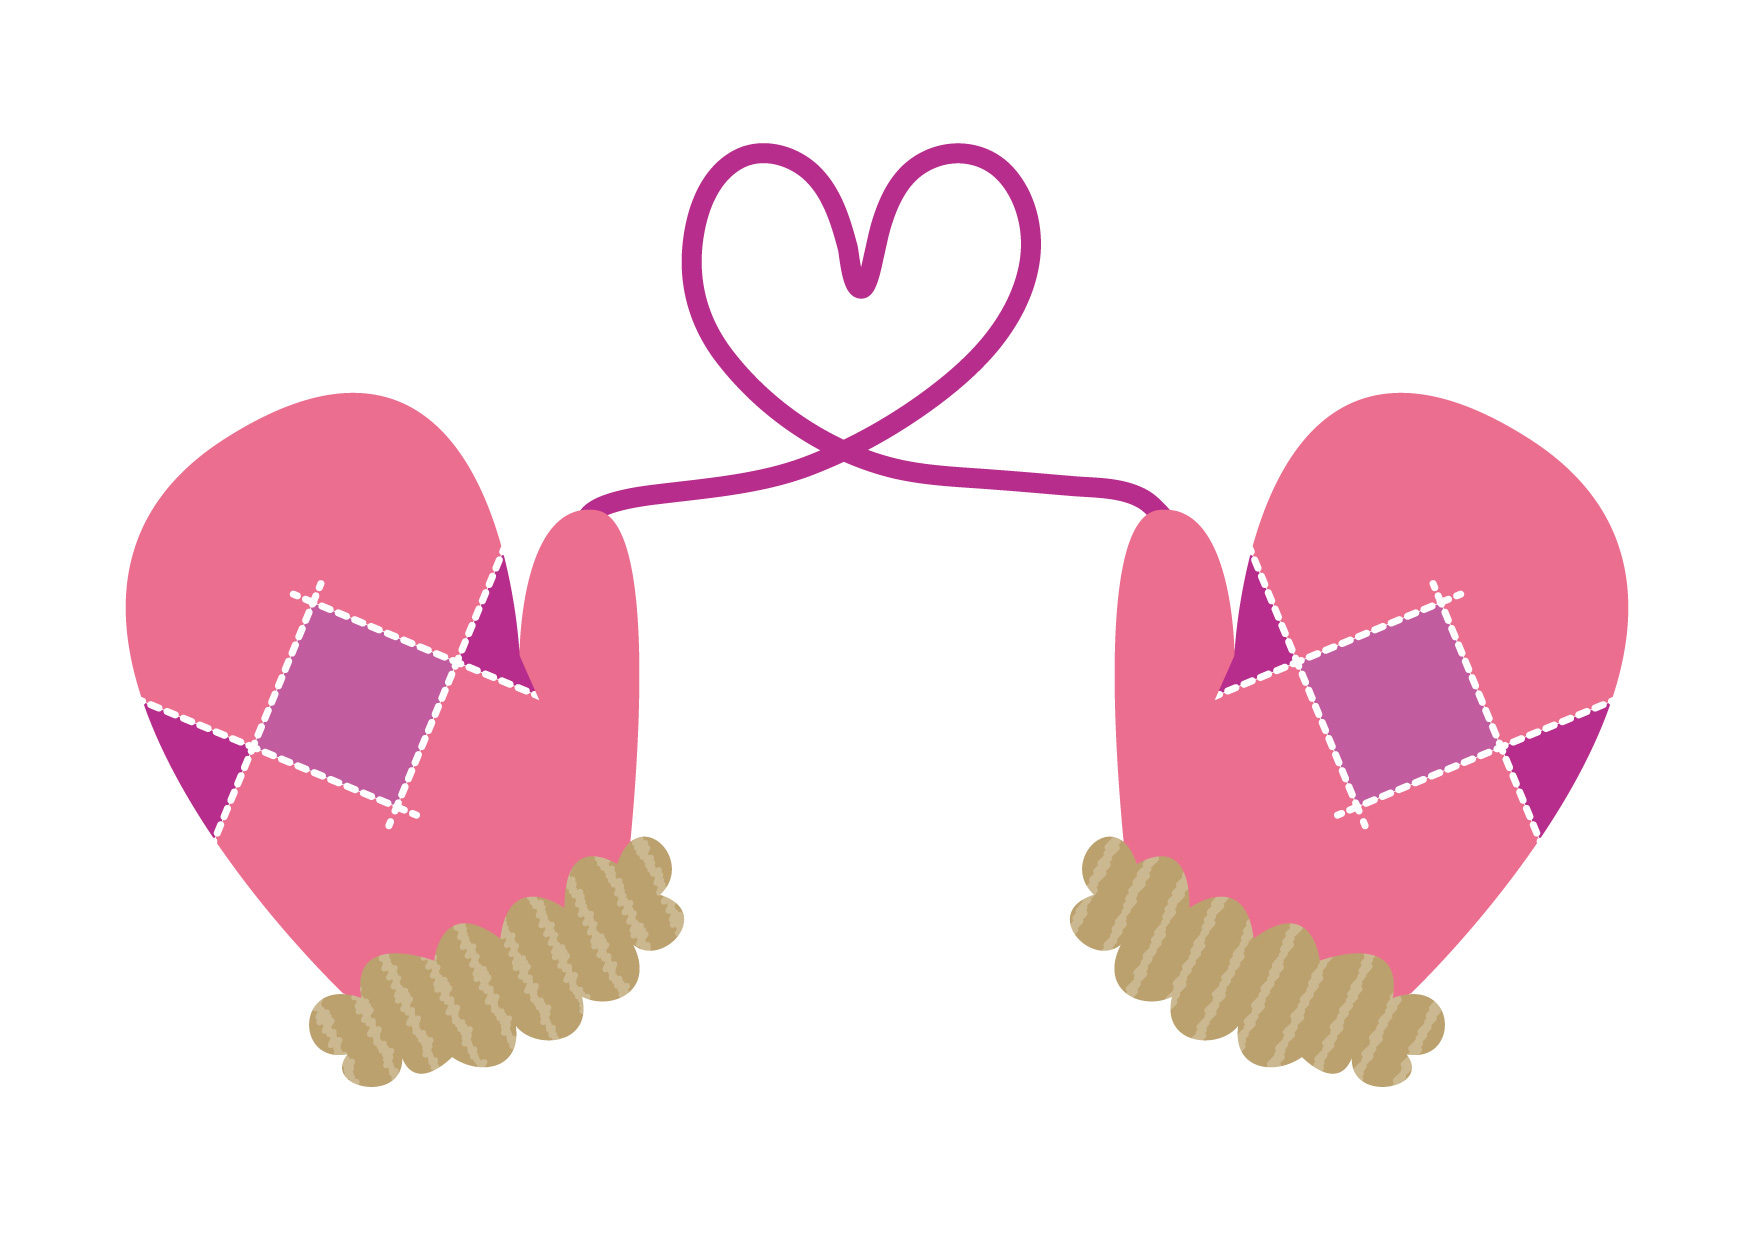 可愛いイラスト無料 手袋 ハート ピンク Free Illustration Gloves Heart Pink 公式 イラスト素材サイト イラストダウンロード